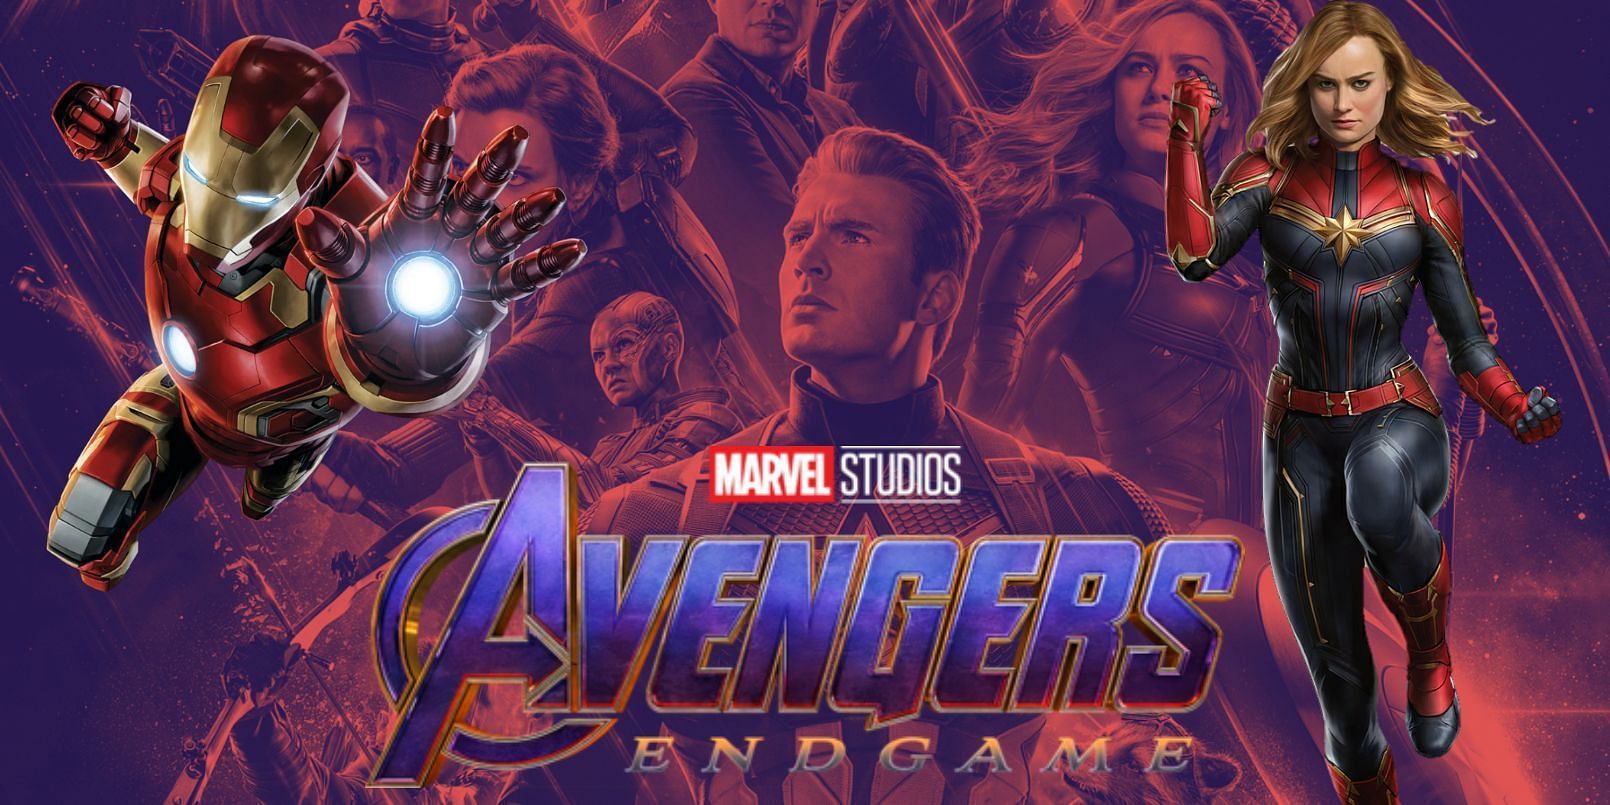 Avengers Endgame